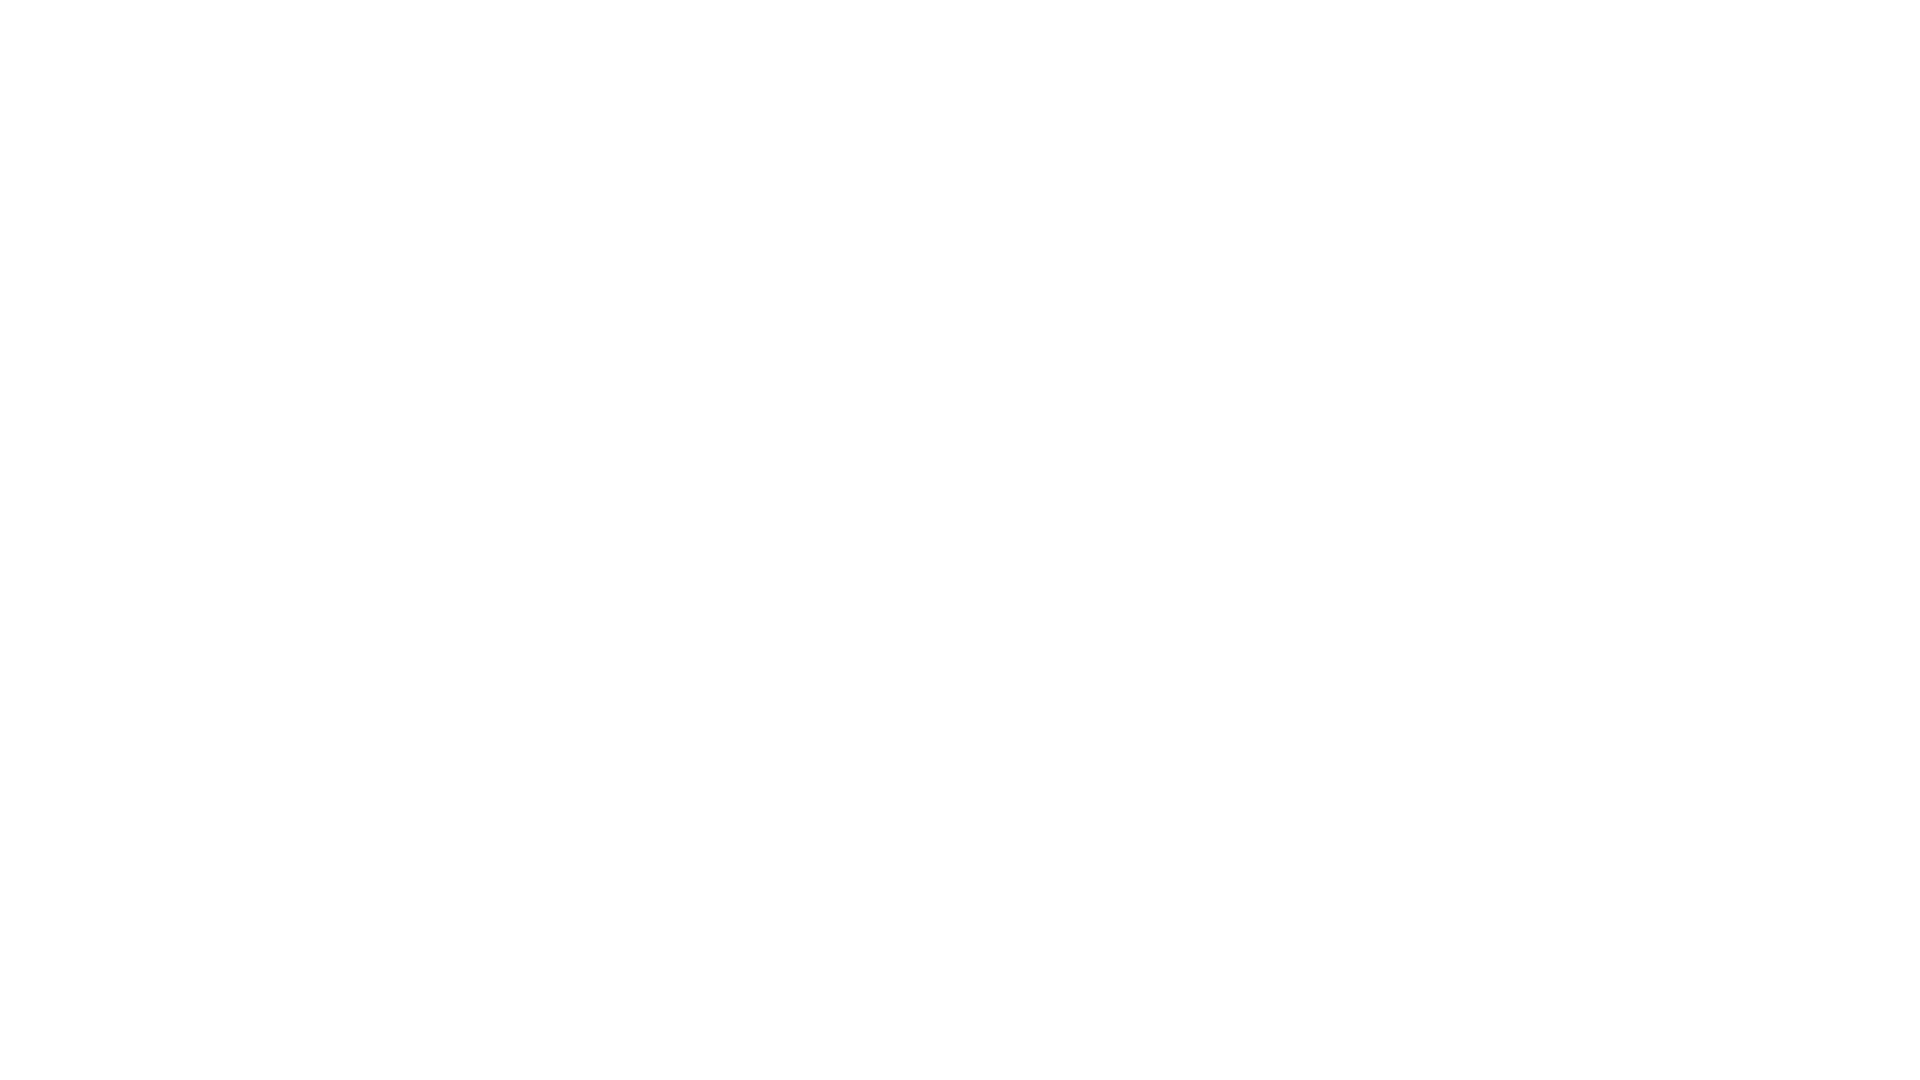 Tampereen kaupungin logo